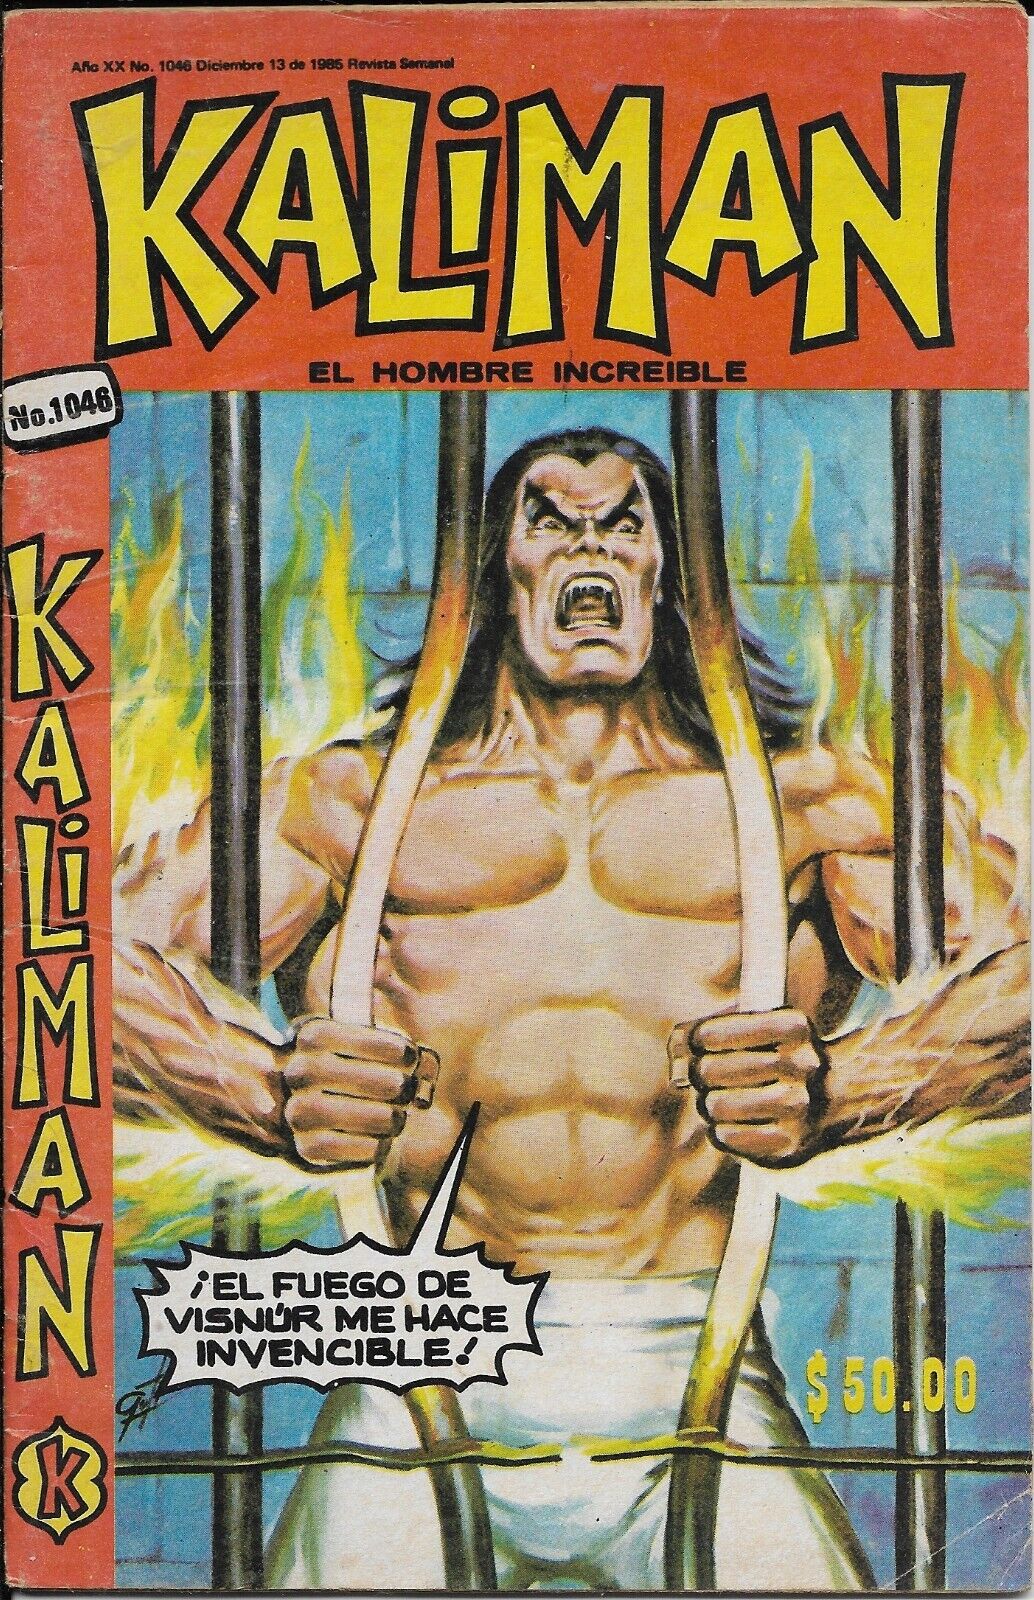 Kaliman El Hombre Increible #1046 - Diciembre 13, 1985